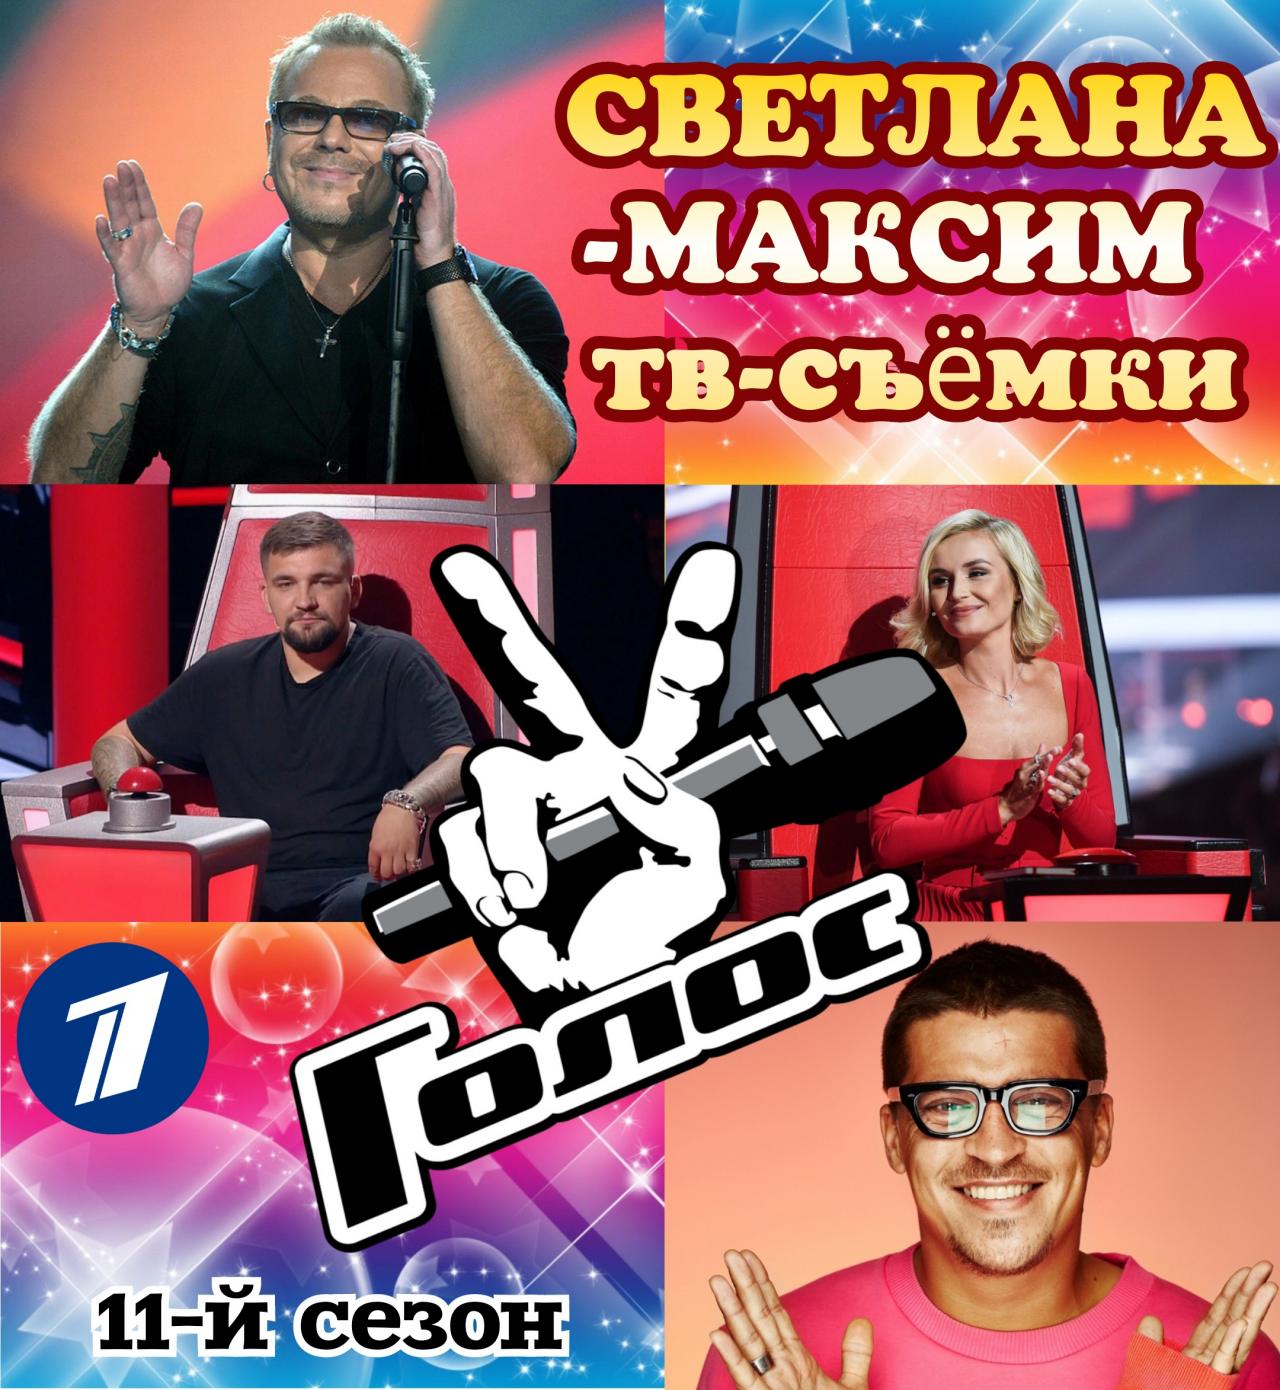 30 марта музыкальное супер-шоу "ГОЛОС 11".